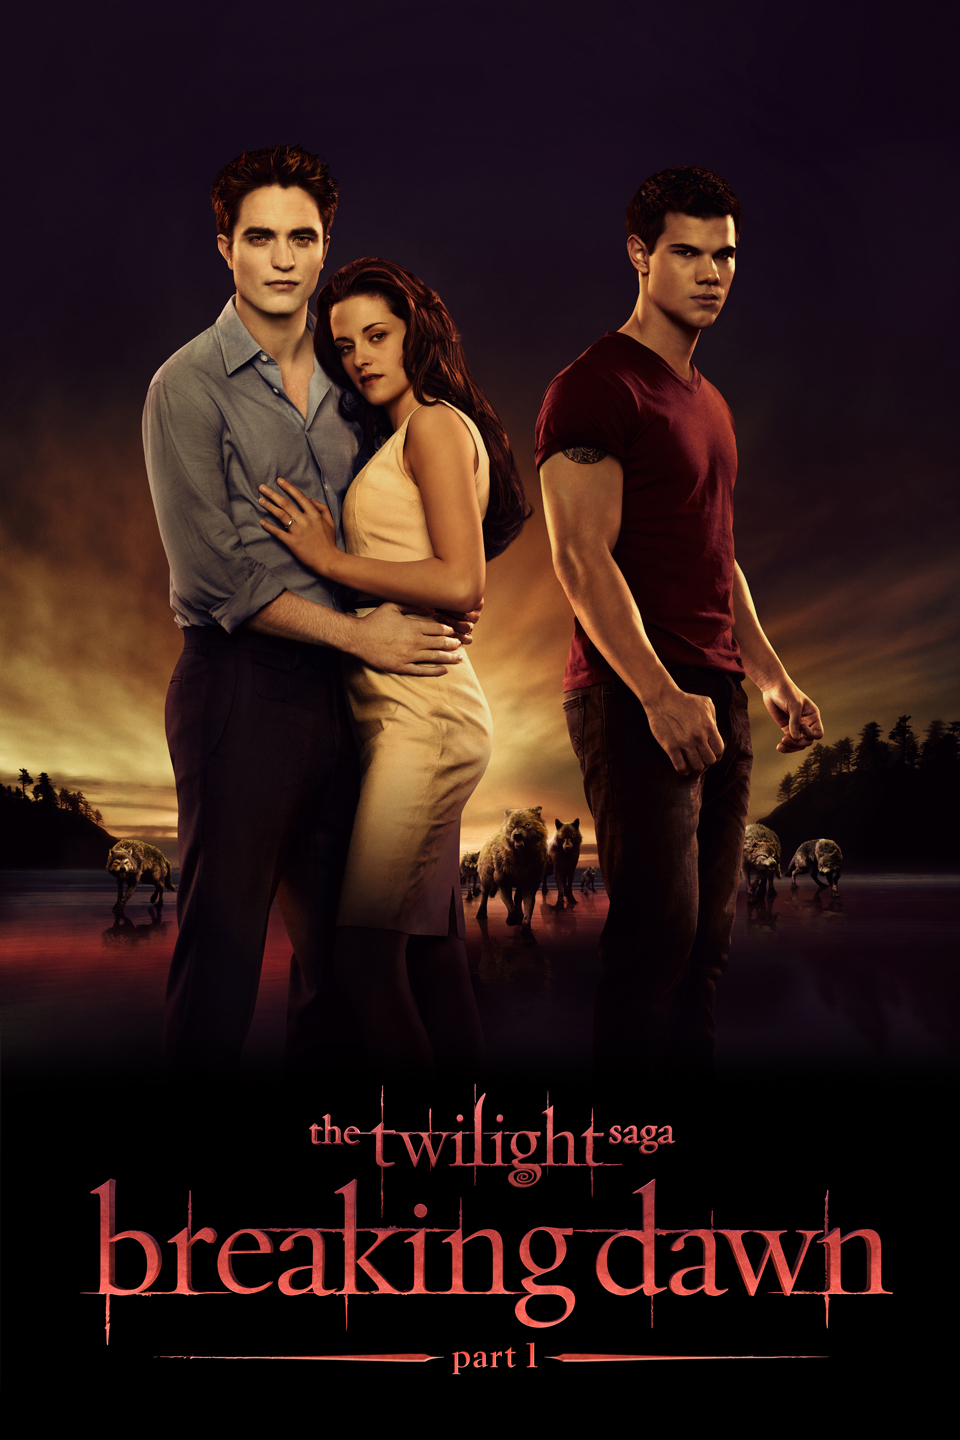 The Twilight Saga: Breaking Dawn Pt. 1